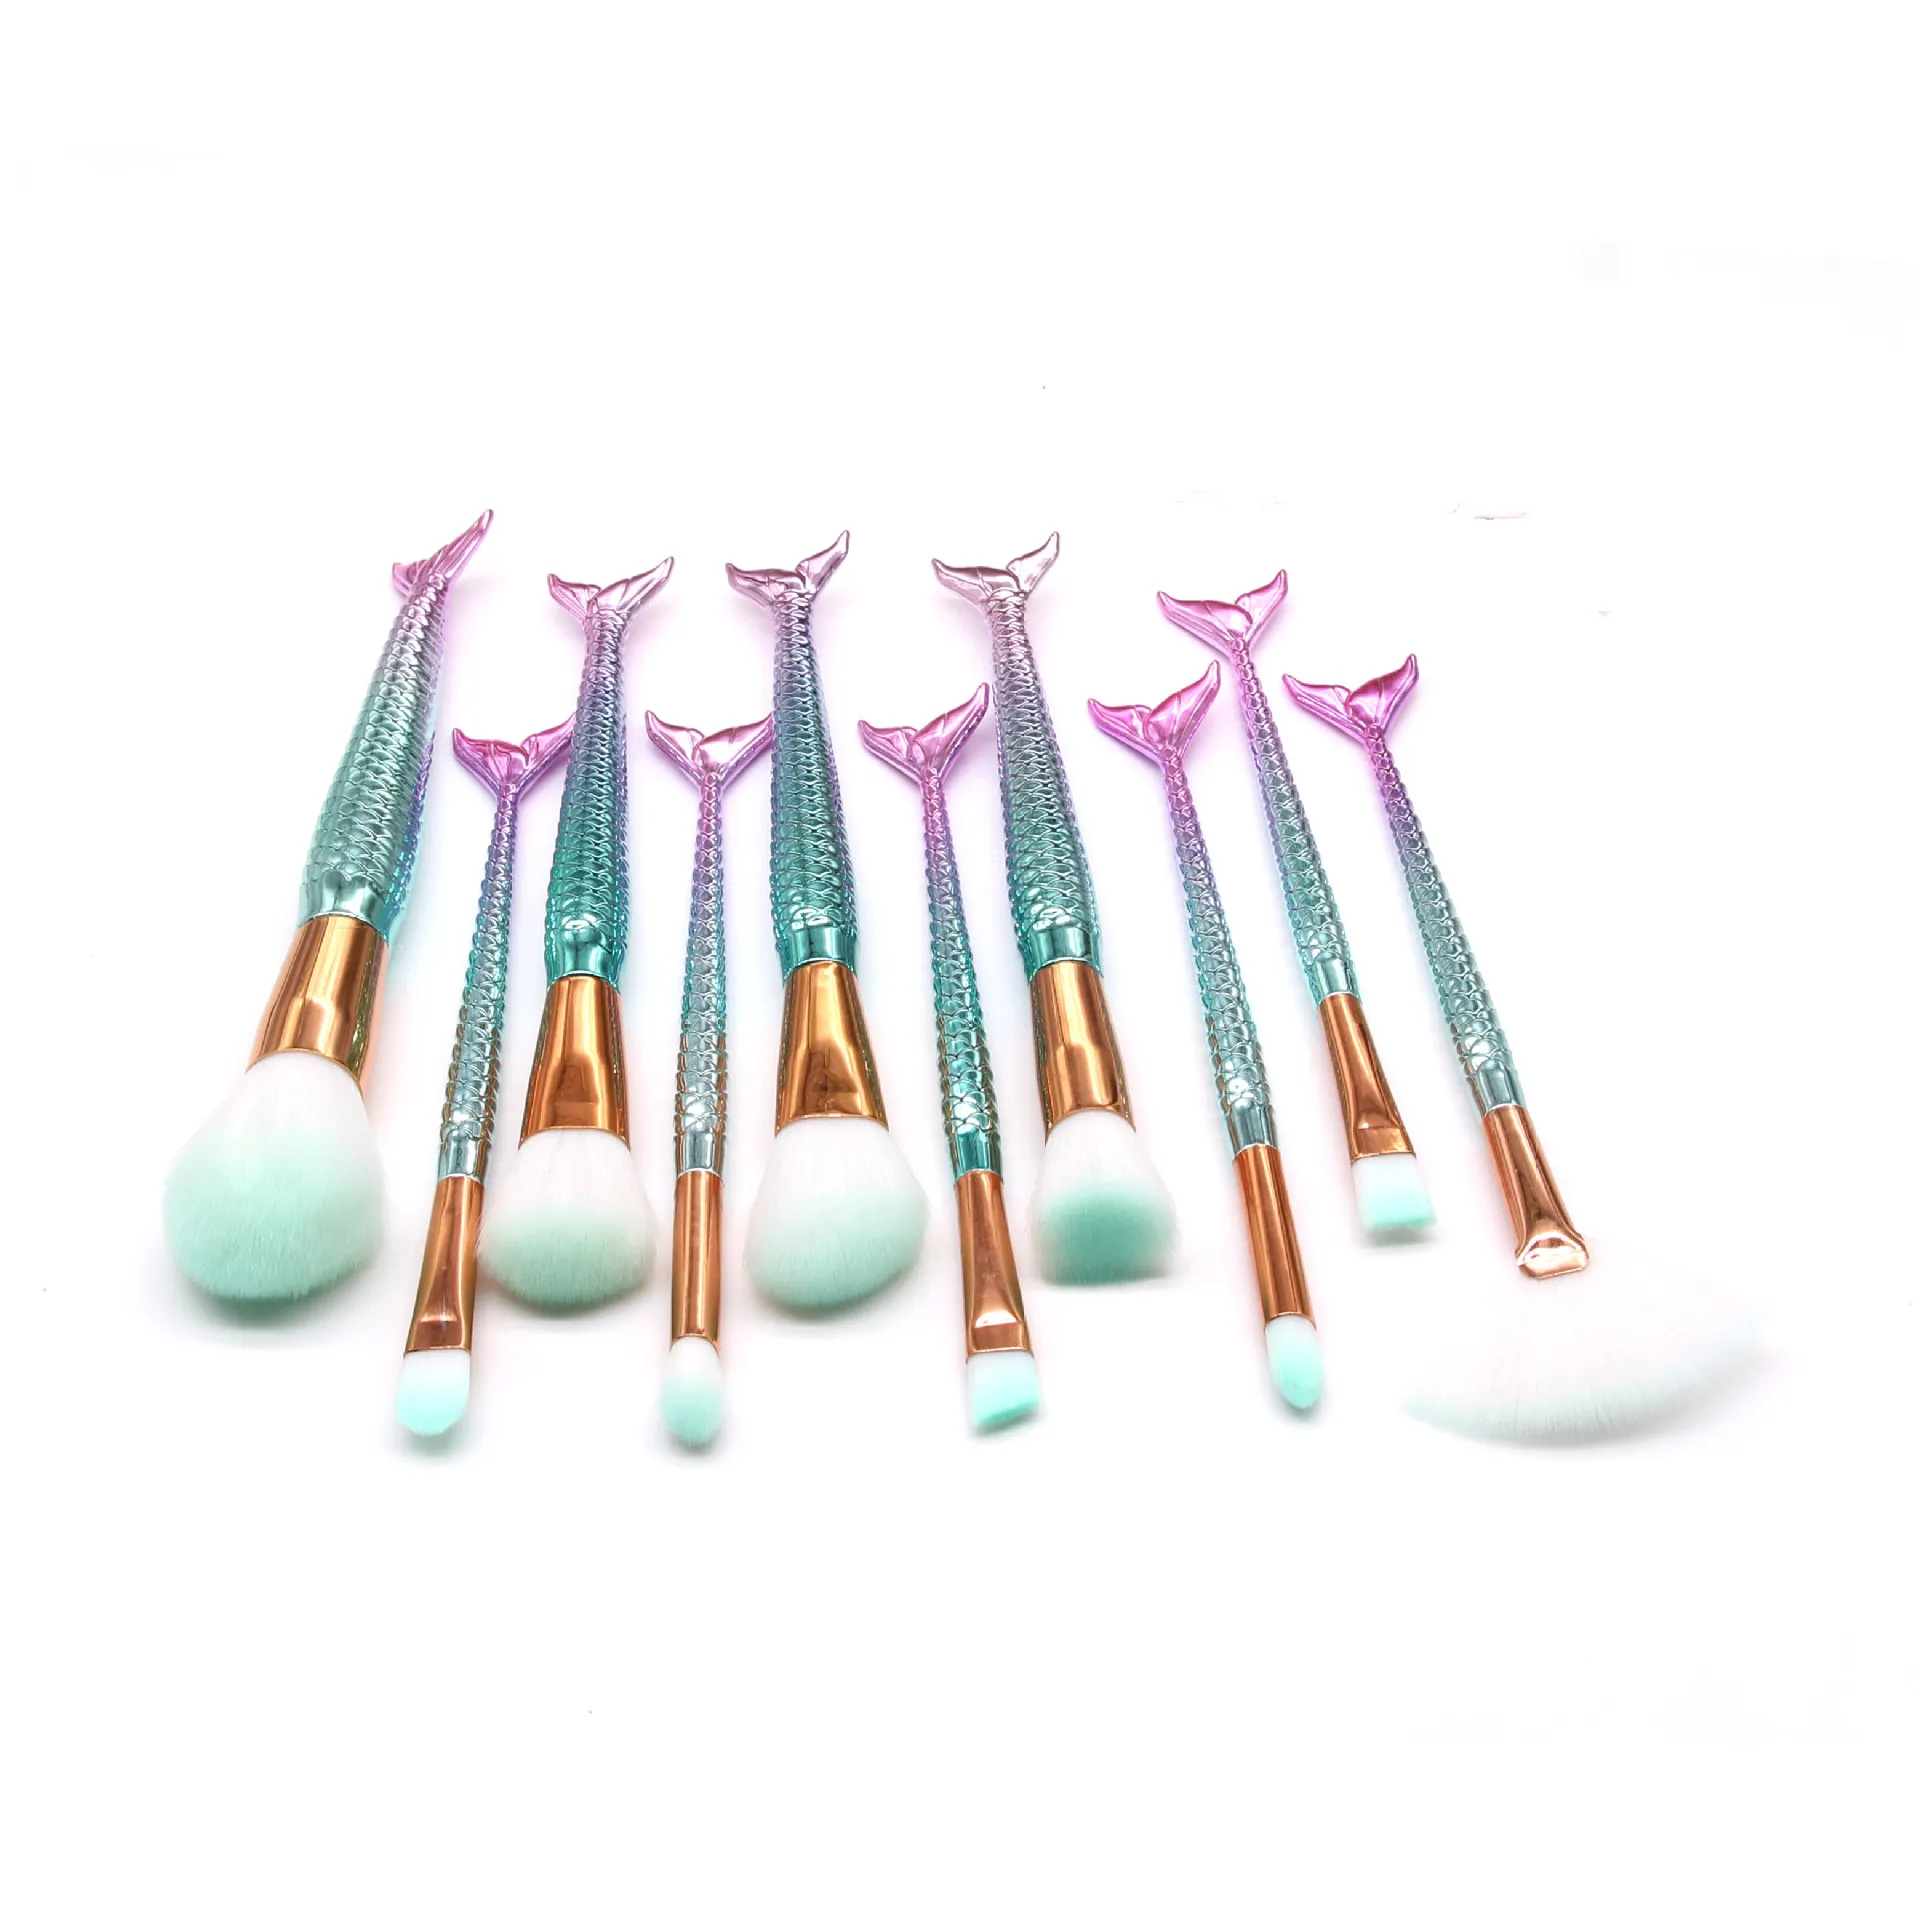 / set Maquillage Brosses Ensembles Mermaid 3D Coloré Colorful Professionnel Maquillage Brosses Fondation Blush Cosmetic Brush Set Kit